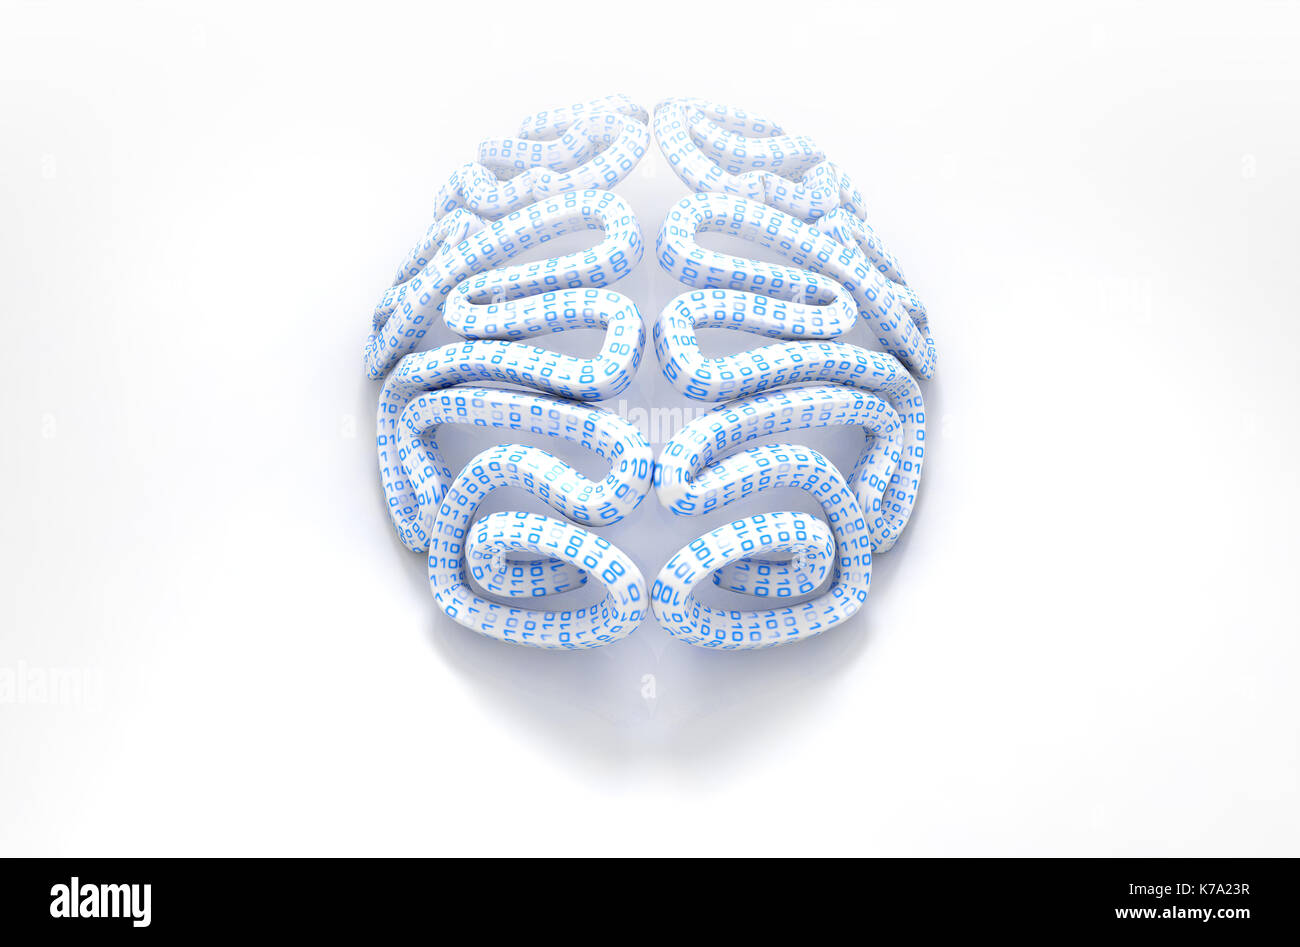 Eine stilisierte Gehirn strukturiert mit binären Computer daten code Darstellung künstliche Intelligenz auf einem isolierten weißen Hintergrund - 3D-Rendering Stockfoto